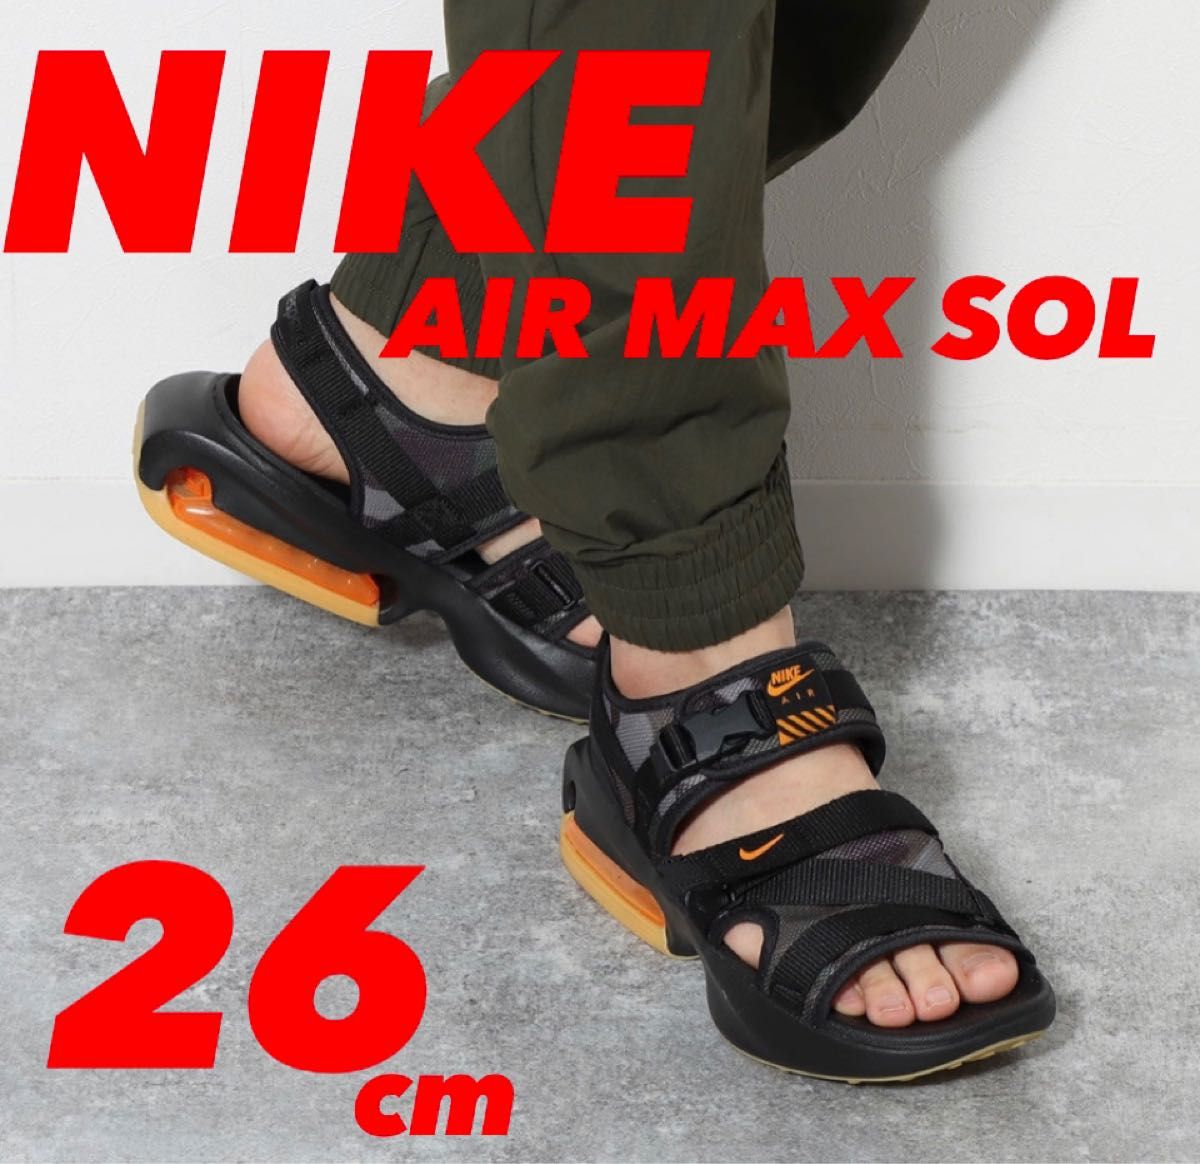 新品 ナイキ エアマックス ソル サンダル NIKE AIR MAX SOL SANDAL 26cm